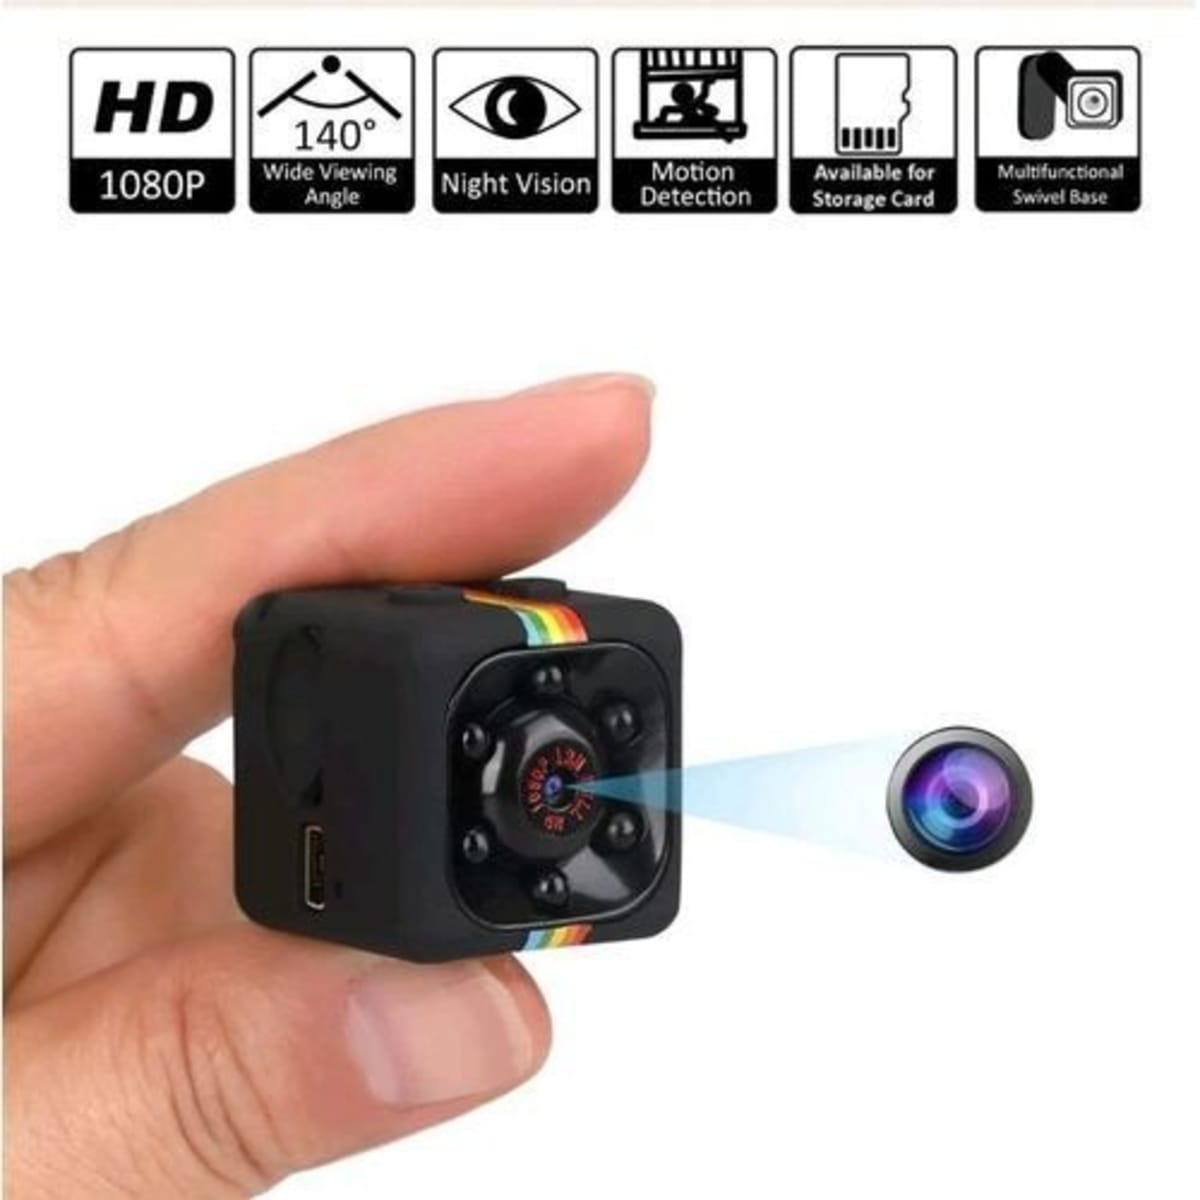 HD 1080P SQ11 Mini Camera